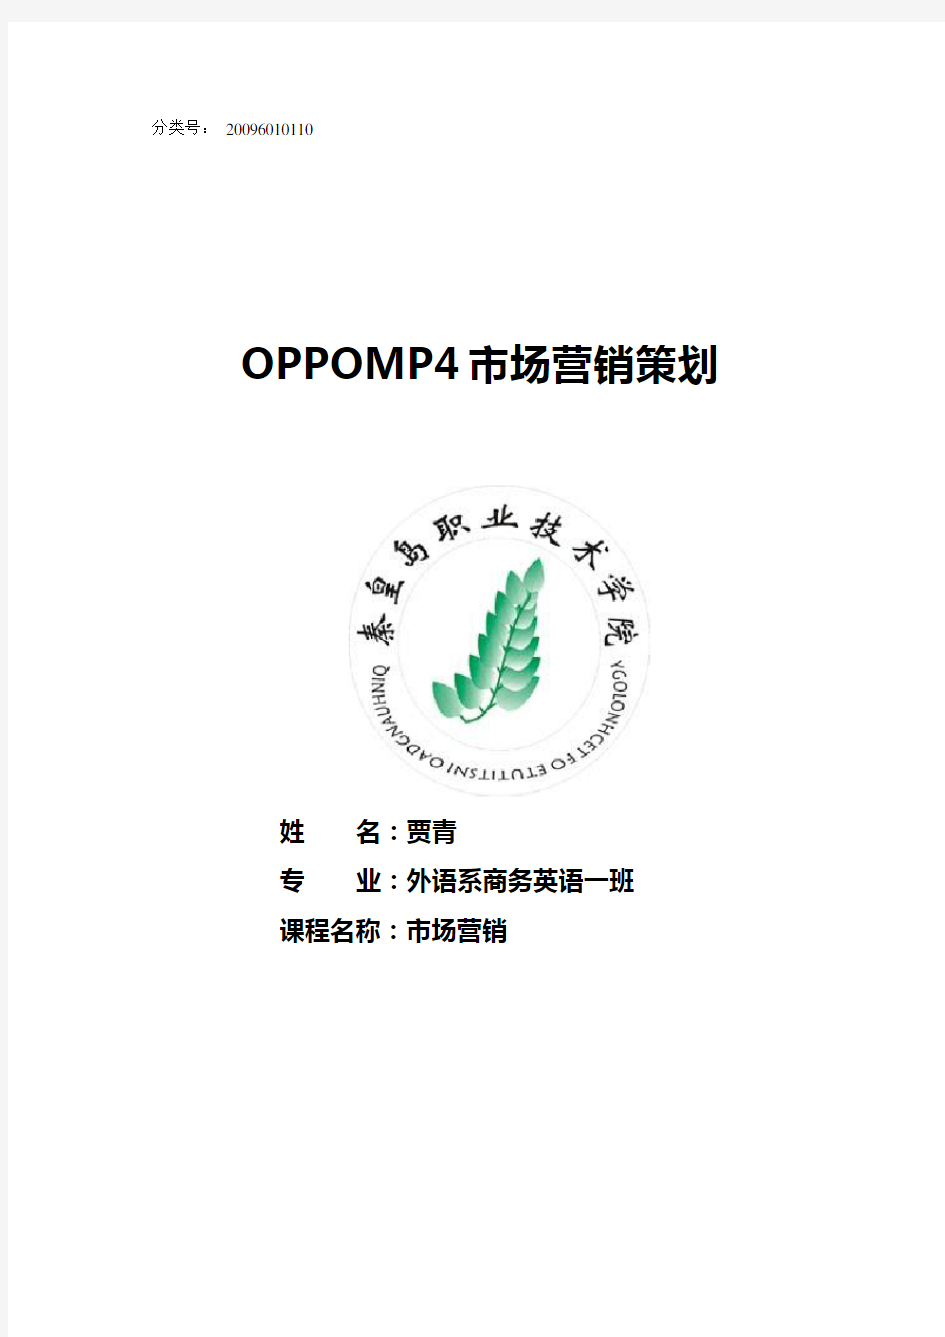 关于oppo的市场调研报告